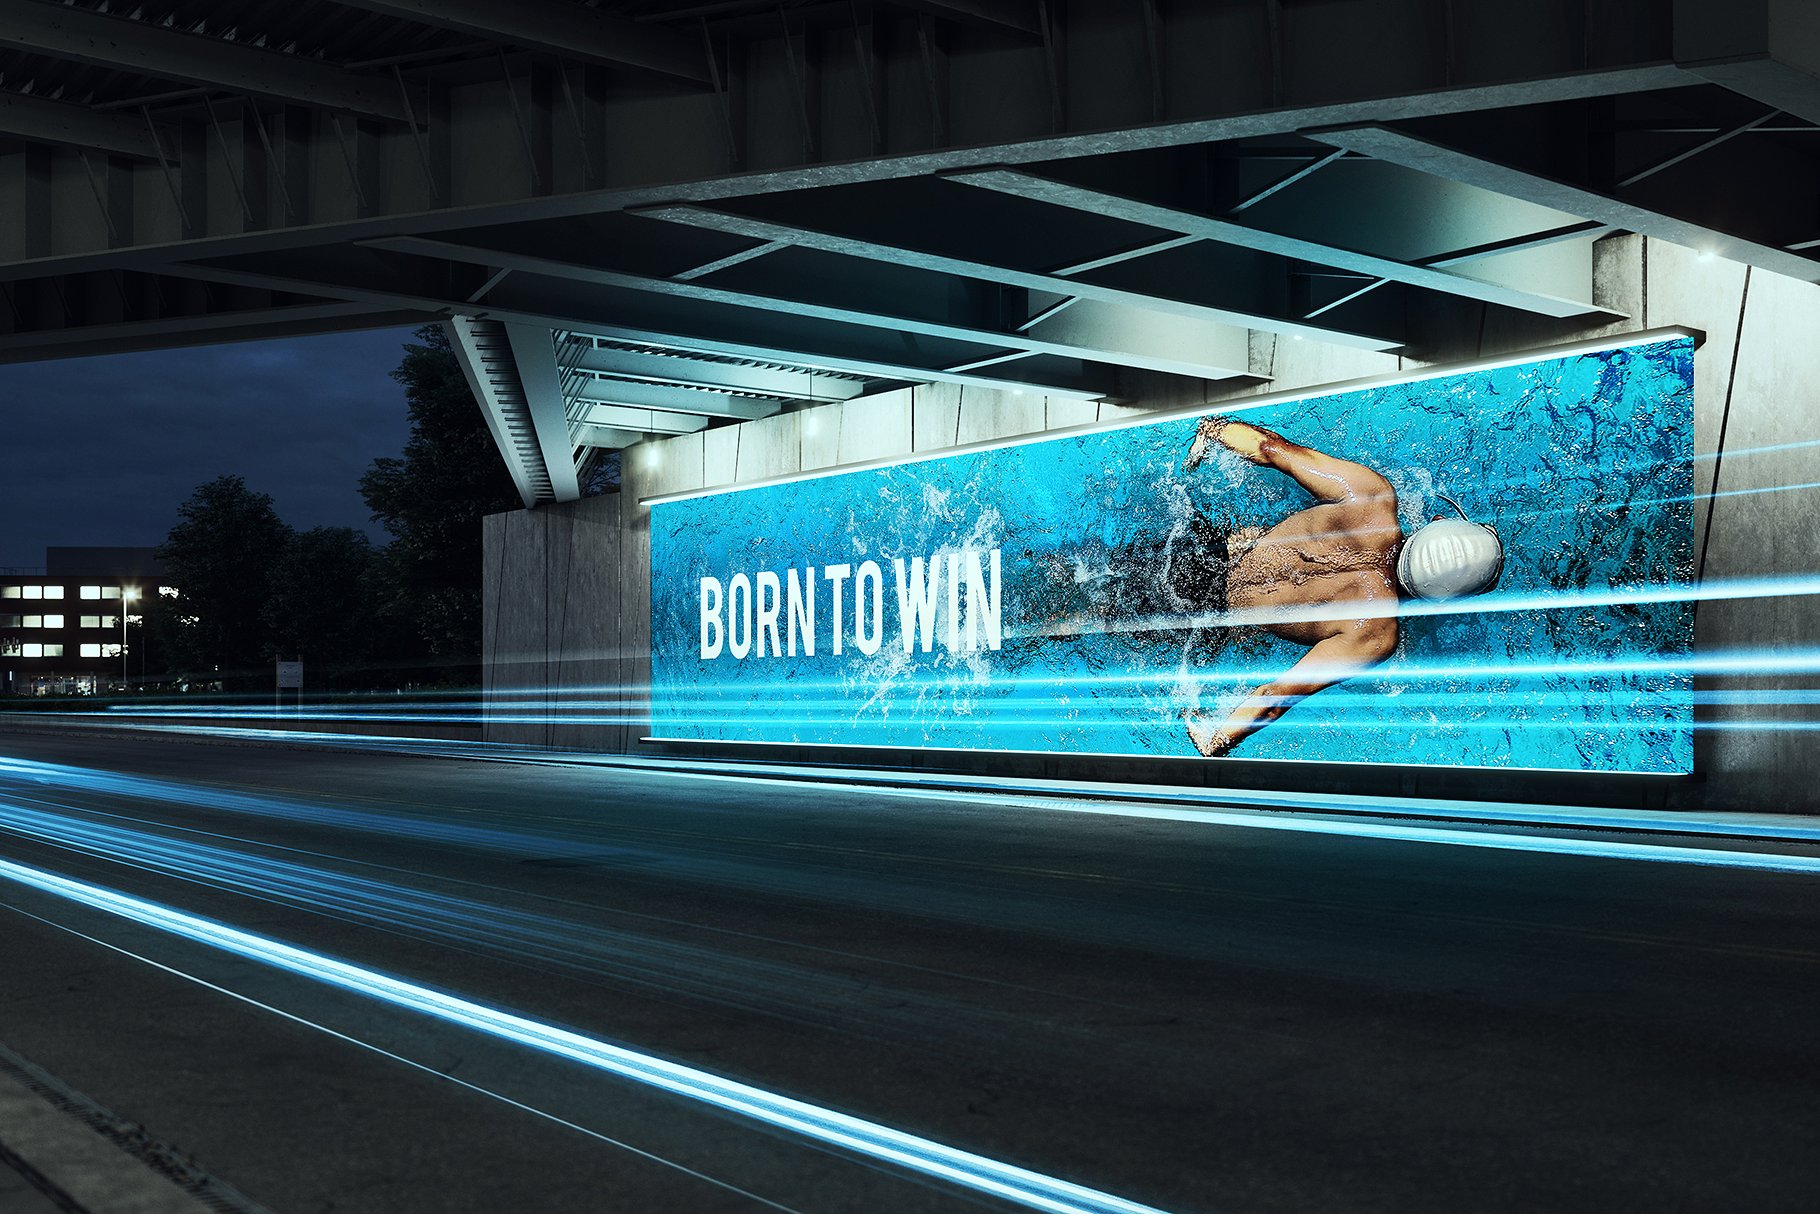 城市公路桥下发光的户外灯箱广告样机 Outdoor Light Box Advertising Prototype Under The City Highway Bridge插图